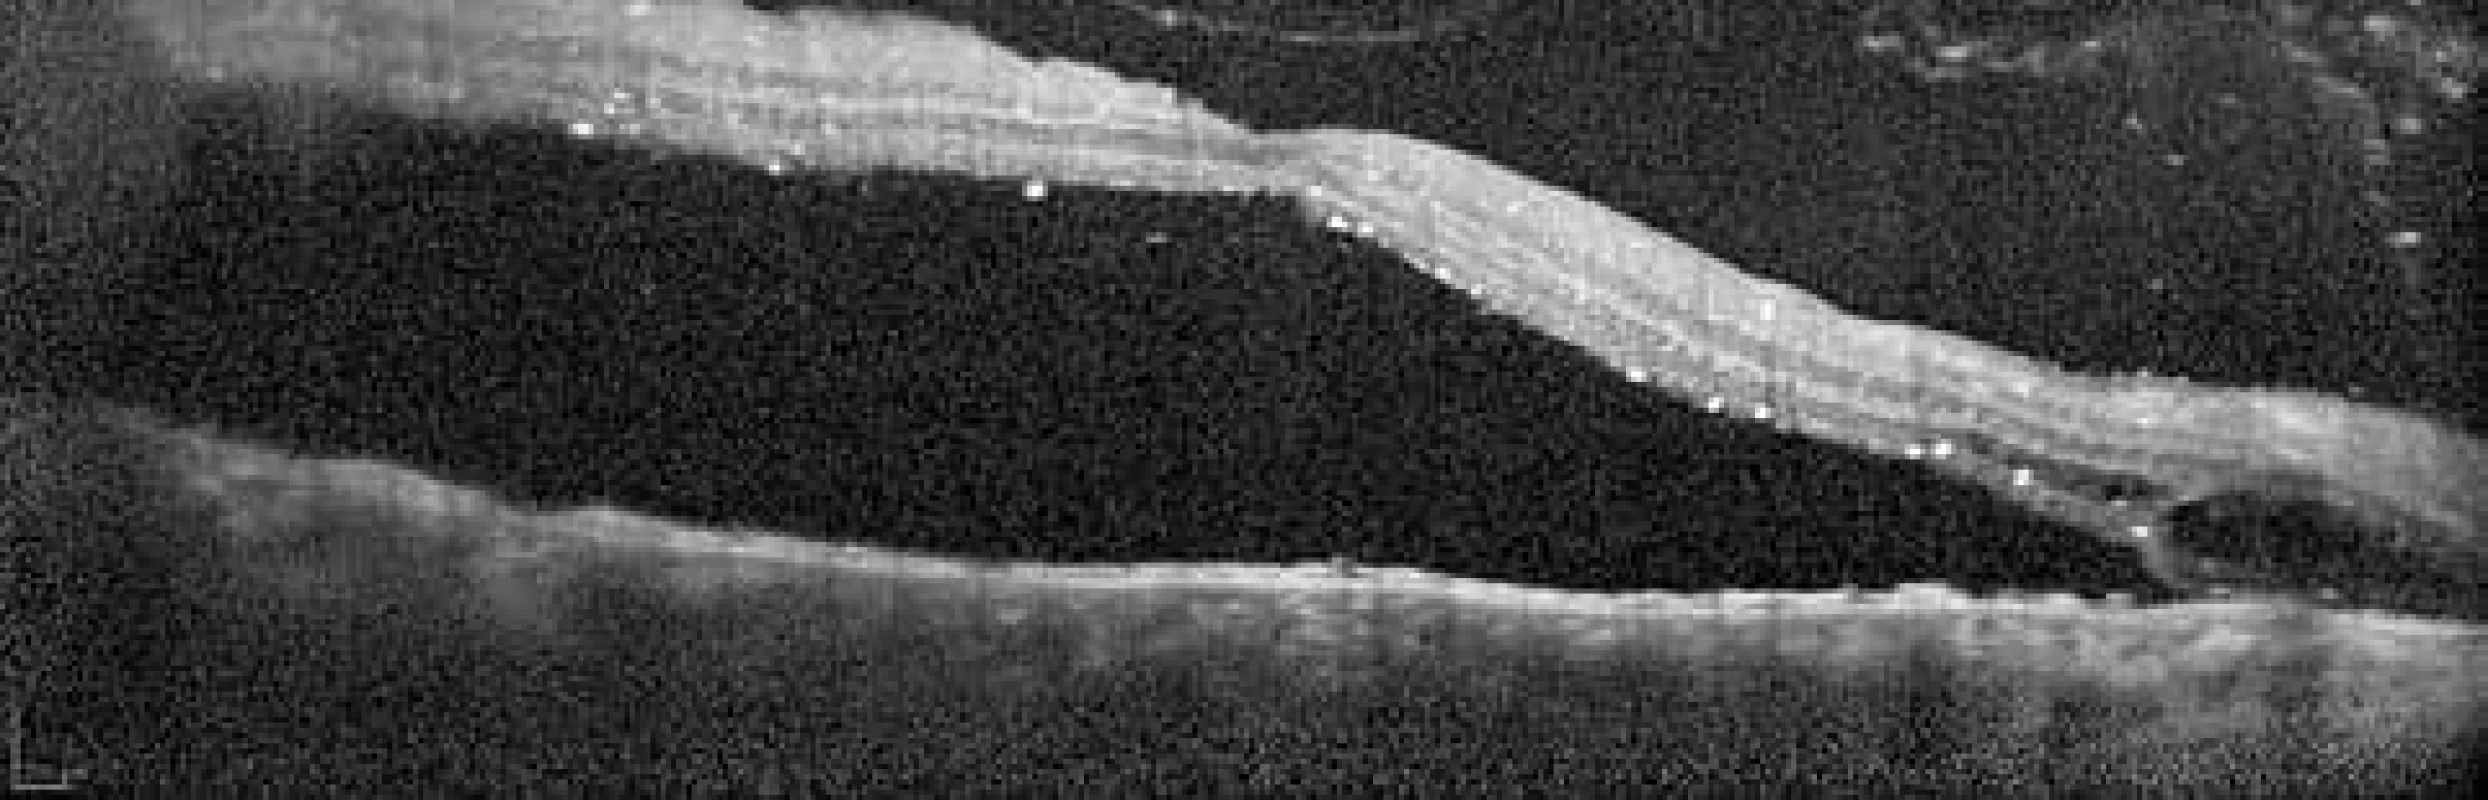 Optická koherentní tomografie makuly pravého oka, leden 2018. Neležící makula